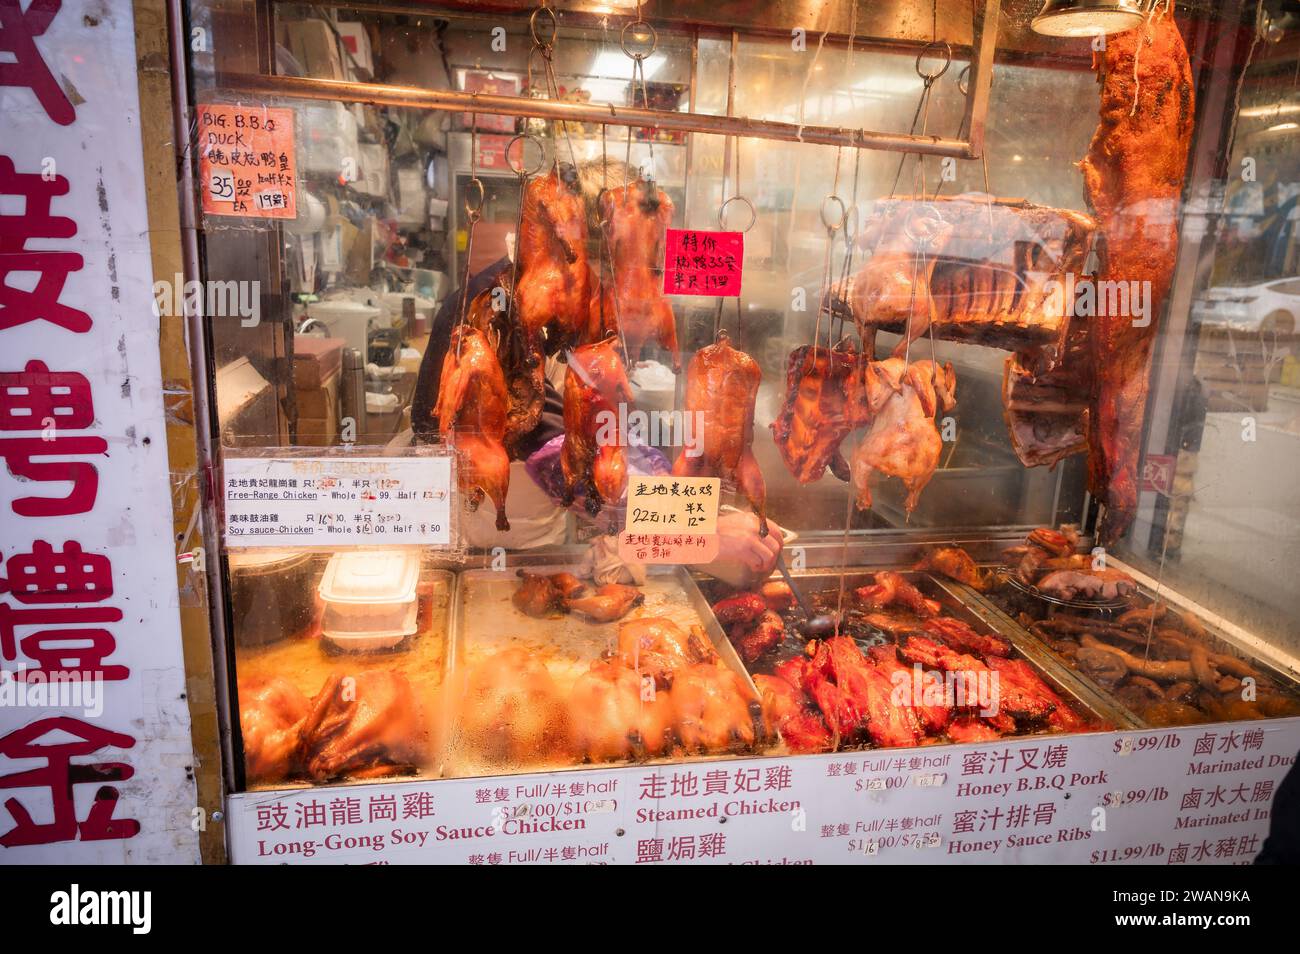 Une boucherie asiatique dans le quartier historique Chinatown de Vancouver. Bâtiments et entreprises du début du siècle dans le quartier de China Town. Banque D'Images